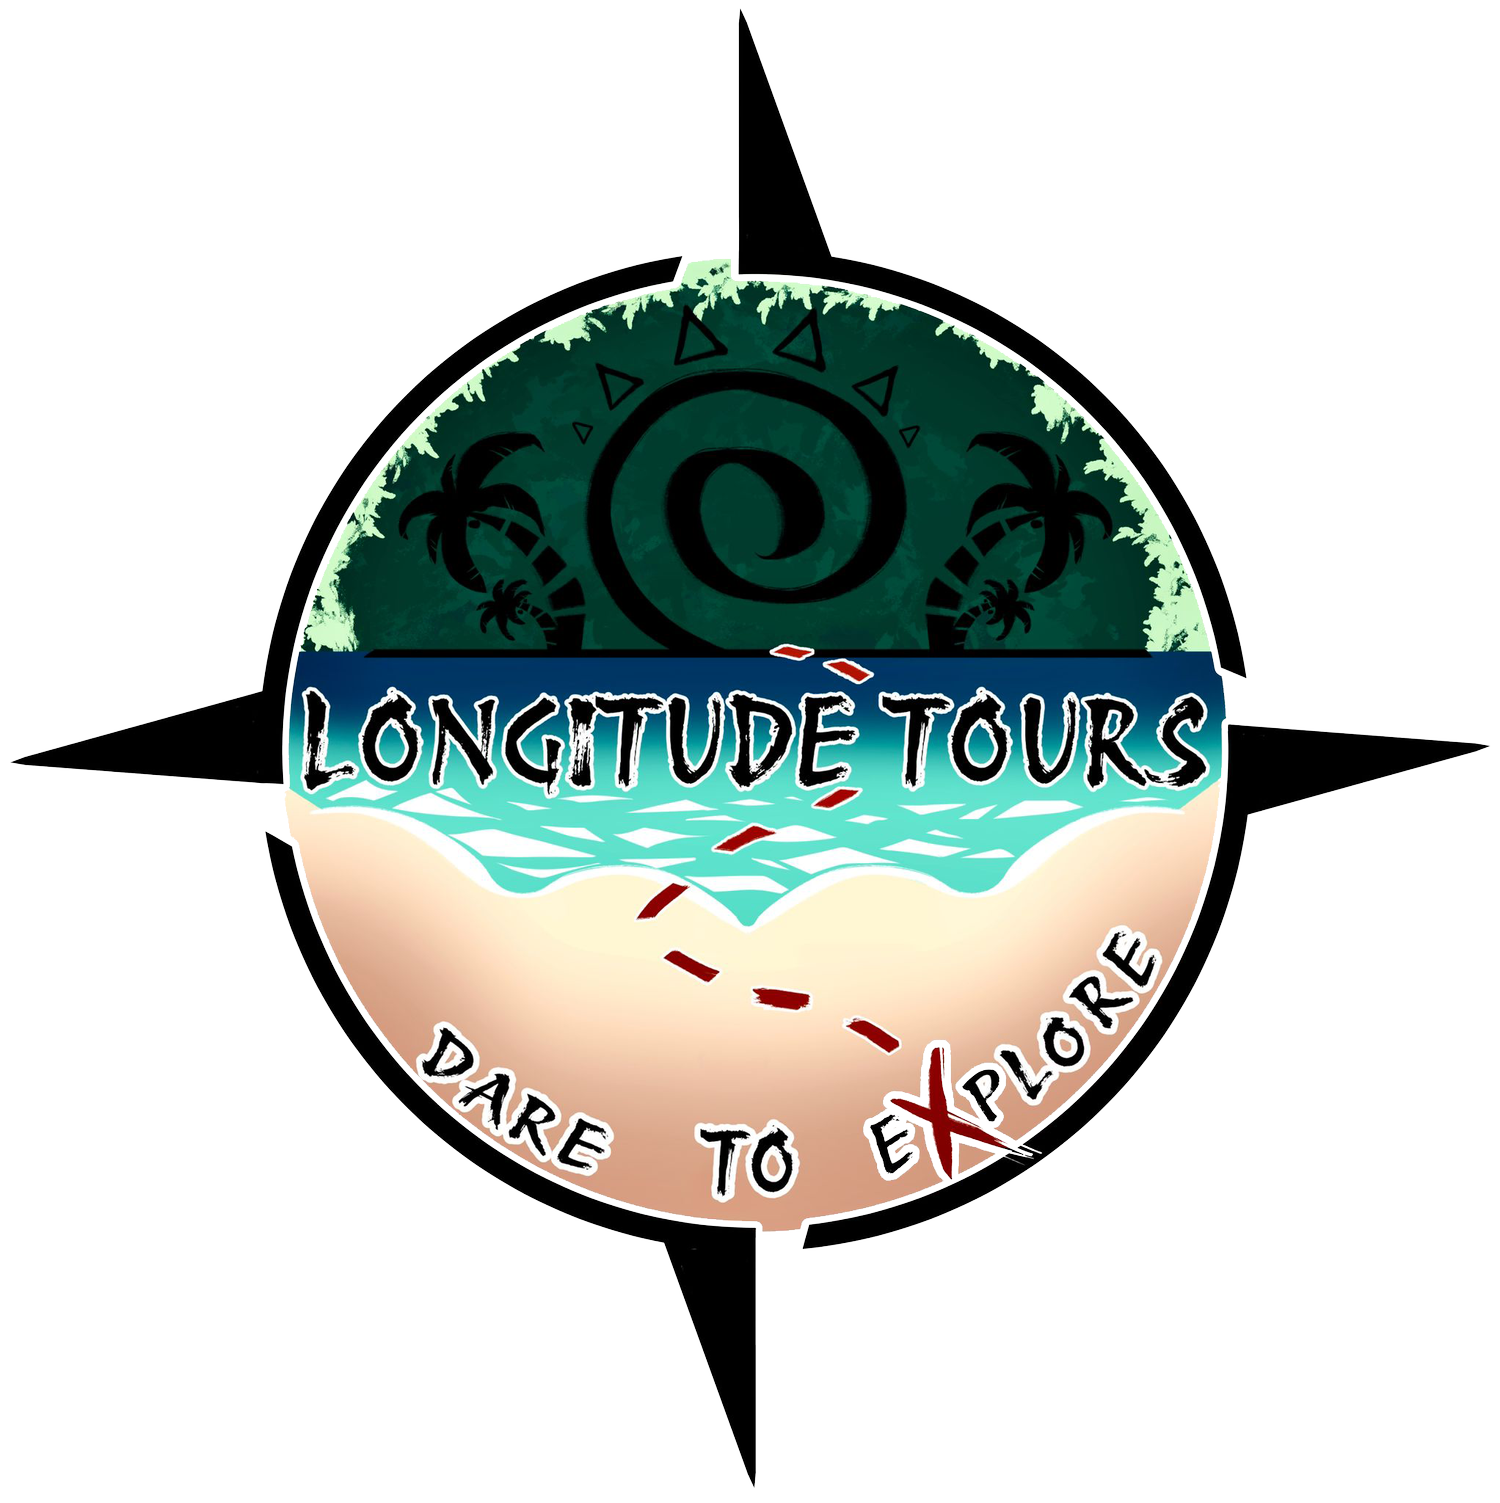 Longitude Tours